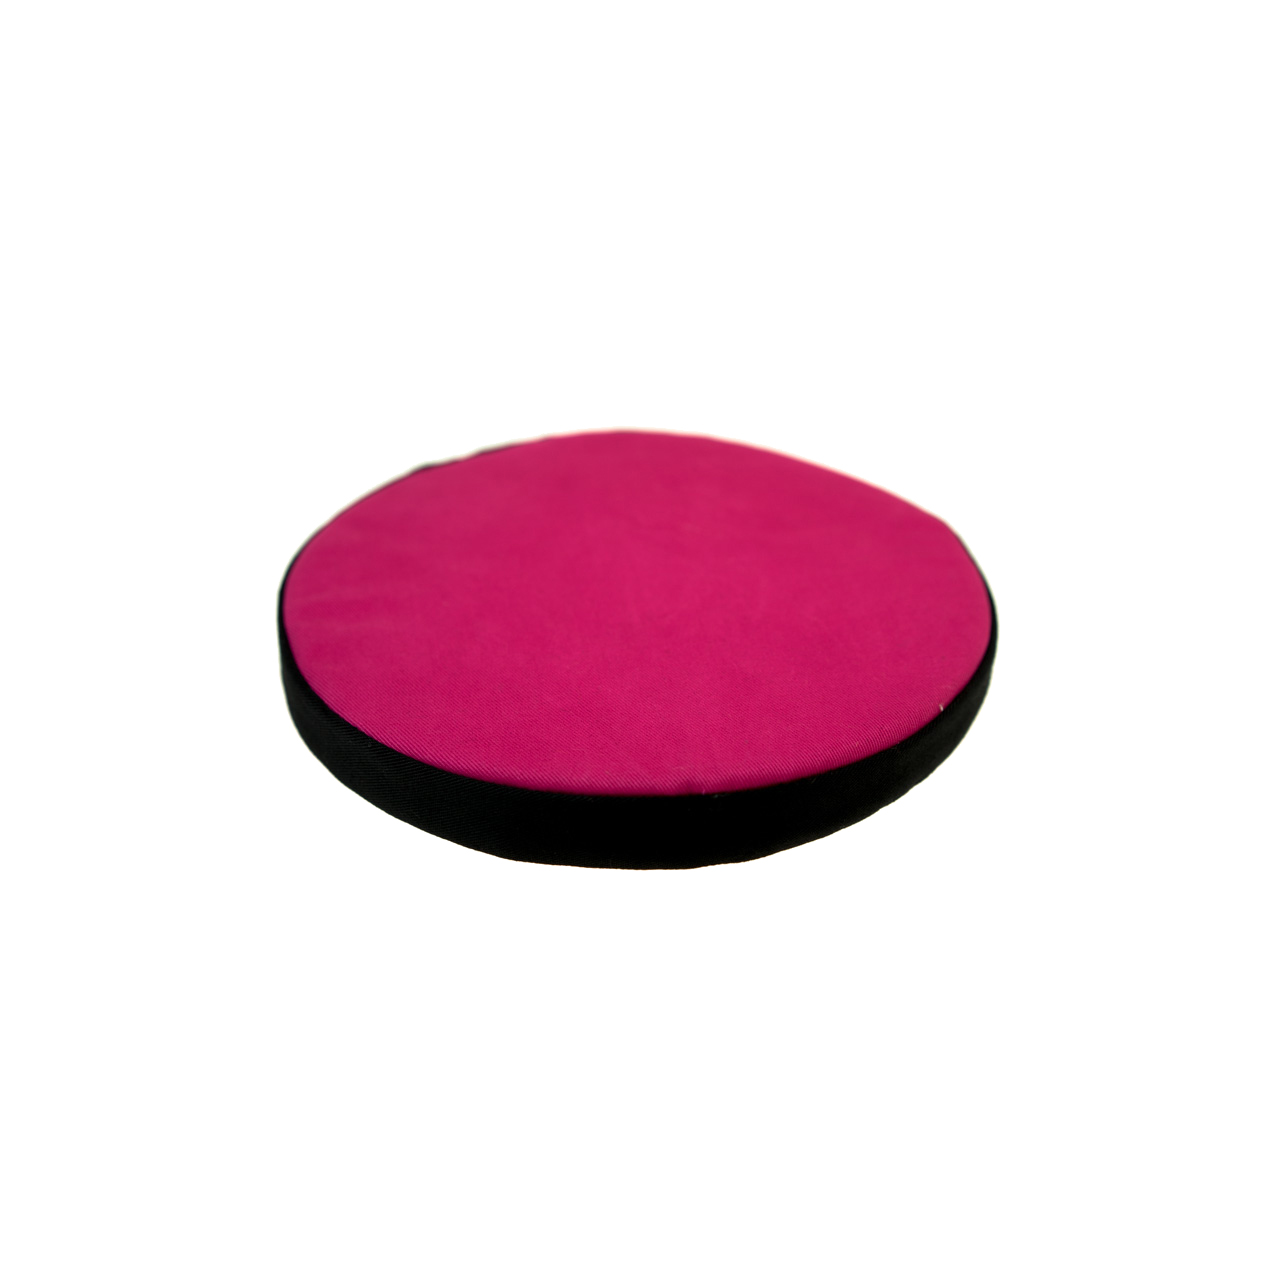 Rundes Kissen für Klangschale pink mit schwarzer Borte Durchmesser 18 cm, Seitenansicht